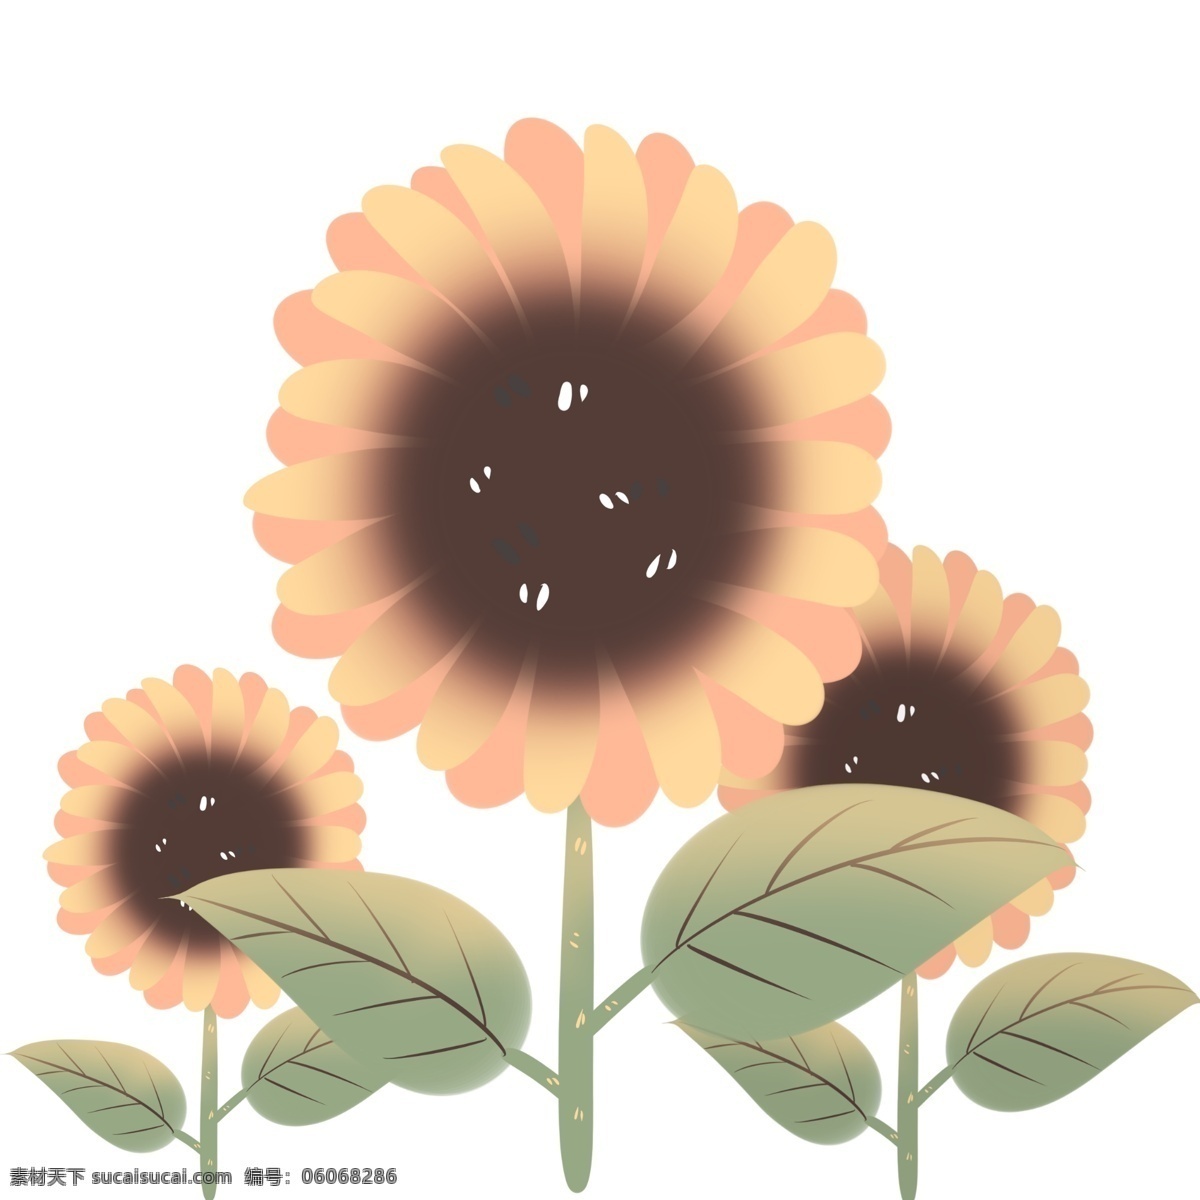 黄色 花瓣 棕色 花蕊 向日葵 清新可爱 胖胖花叶 舒服 小 清新 特色 花朵 美丽自然 创意设计 手绘 原创 手绘卡通